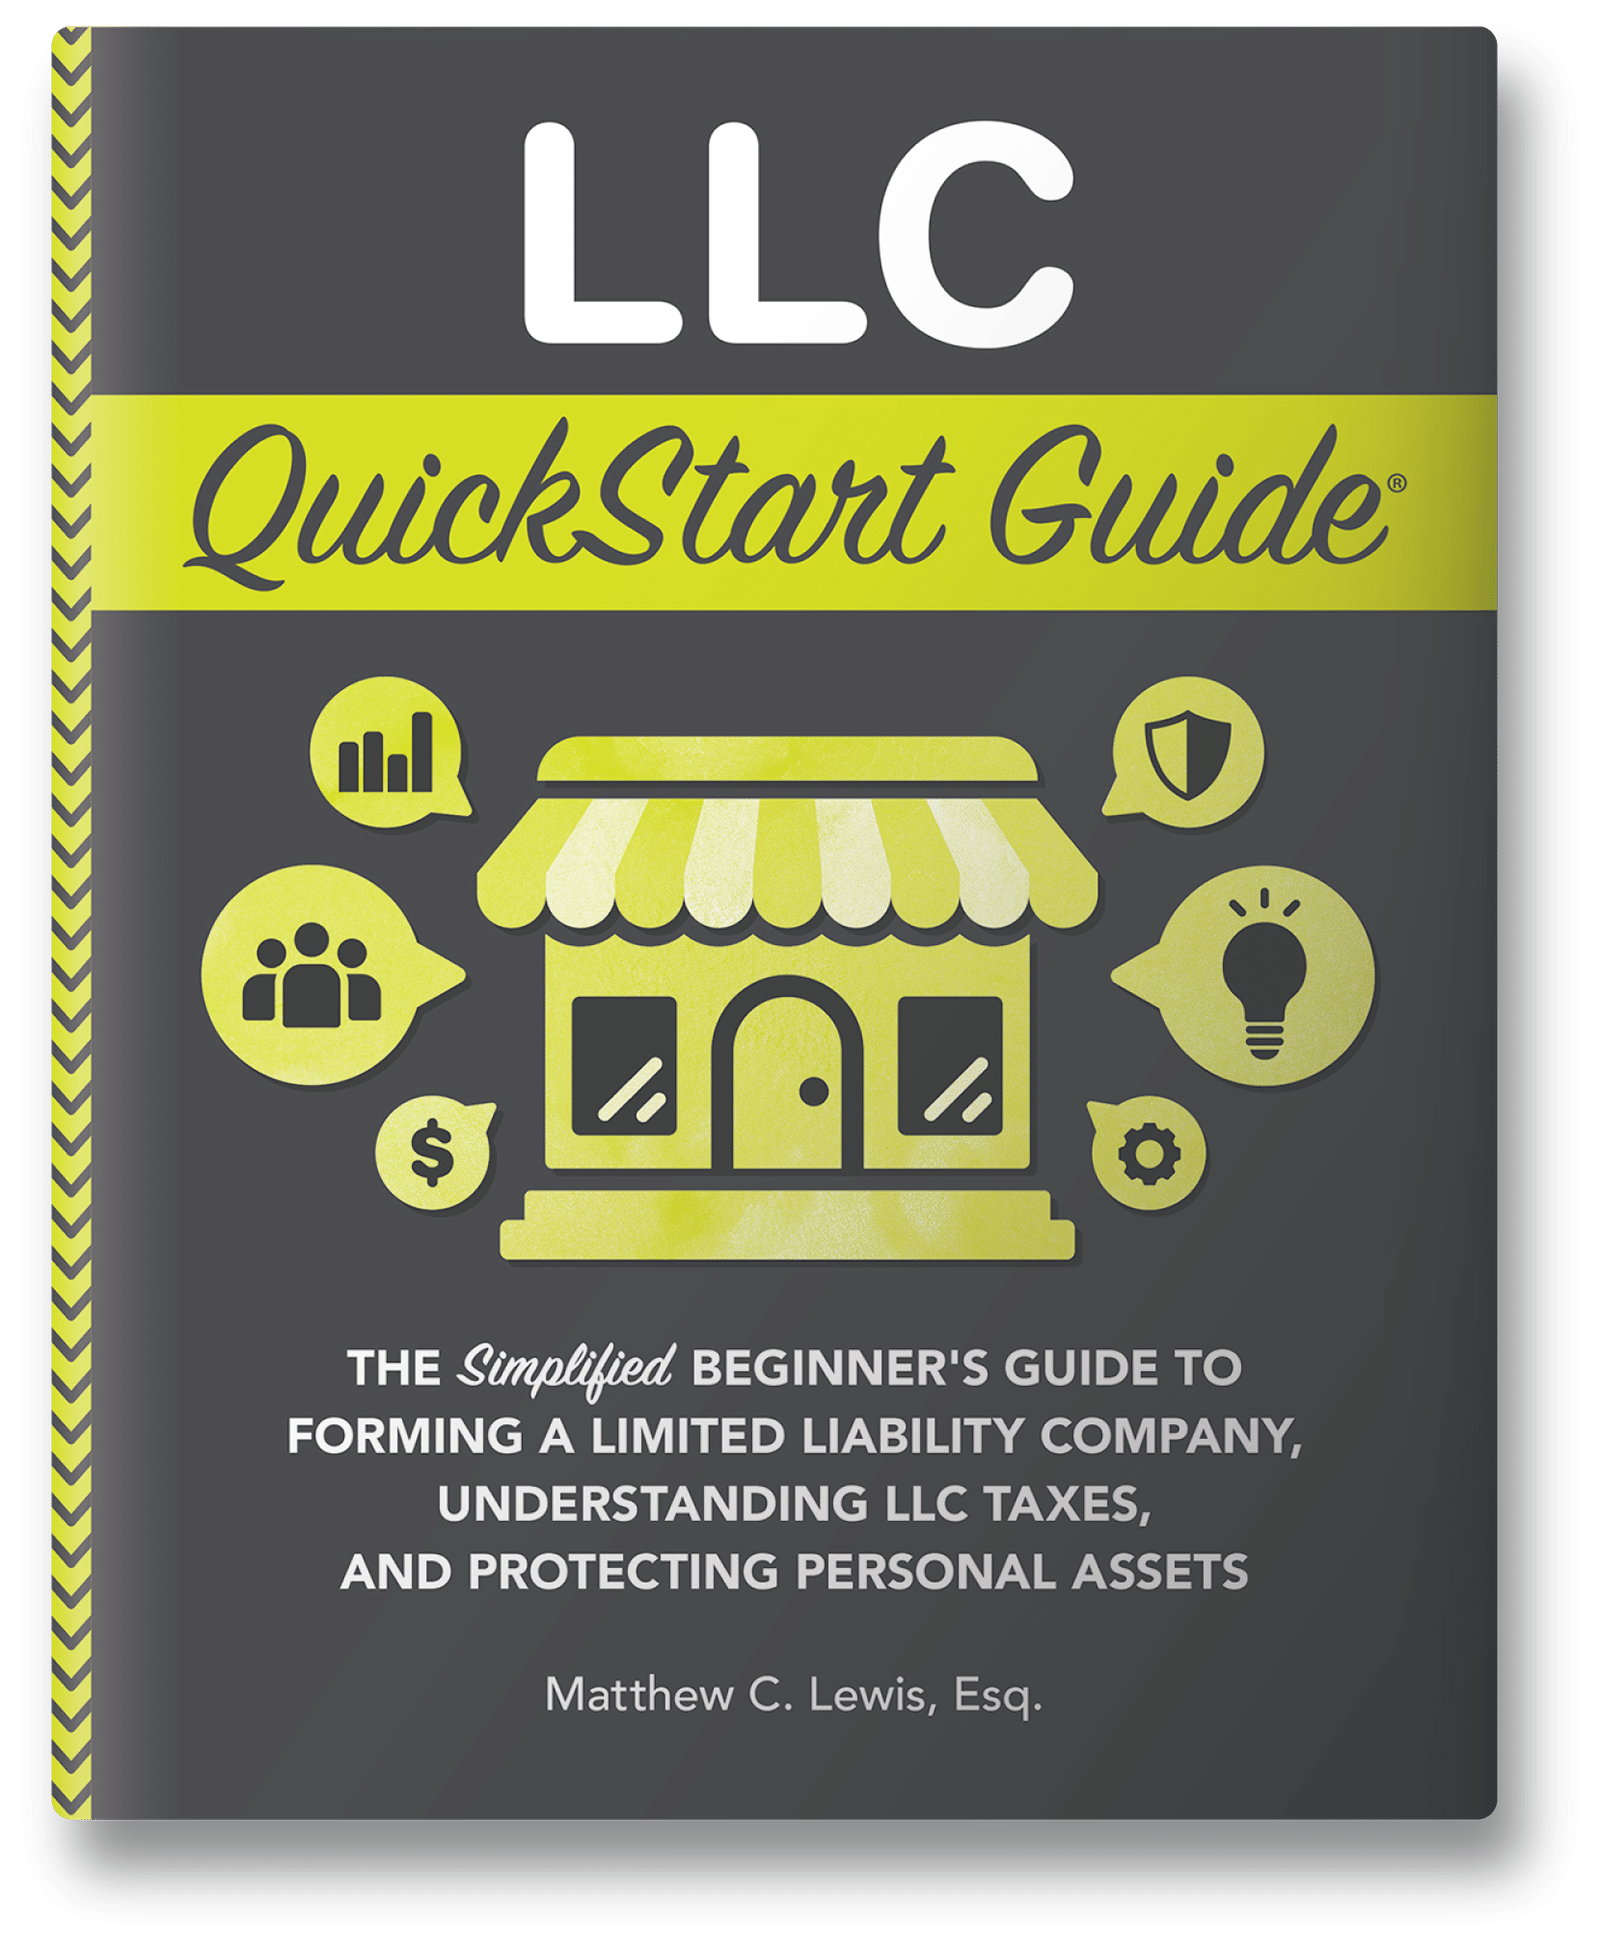 LLC QuickStart Guide front cover